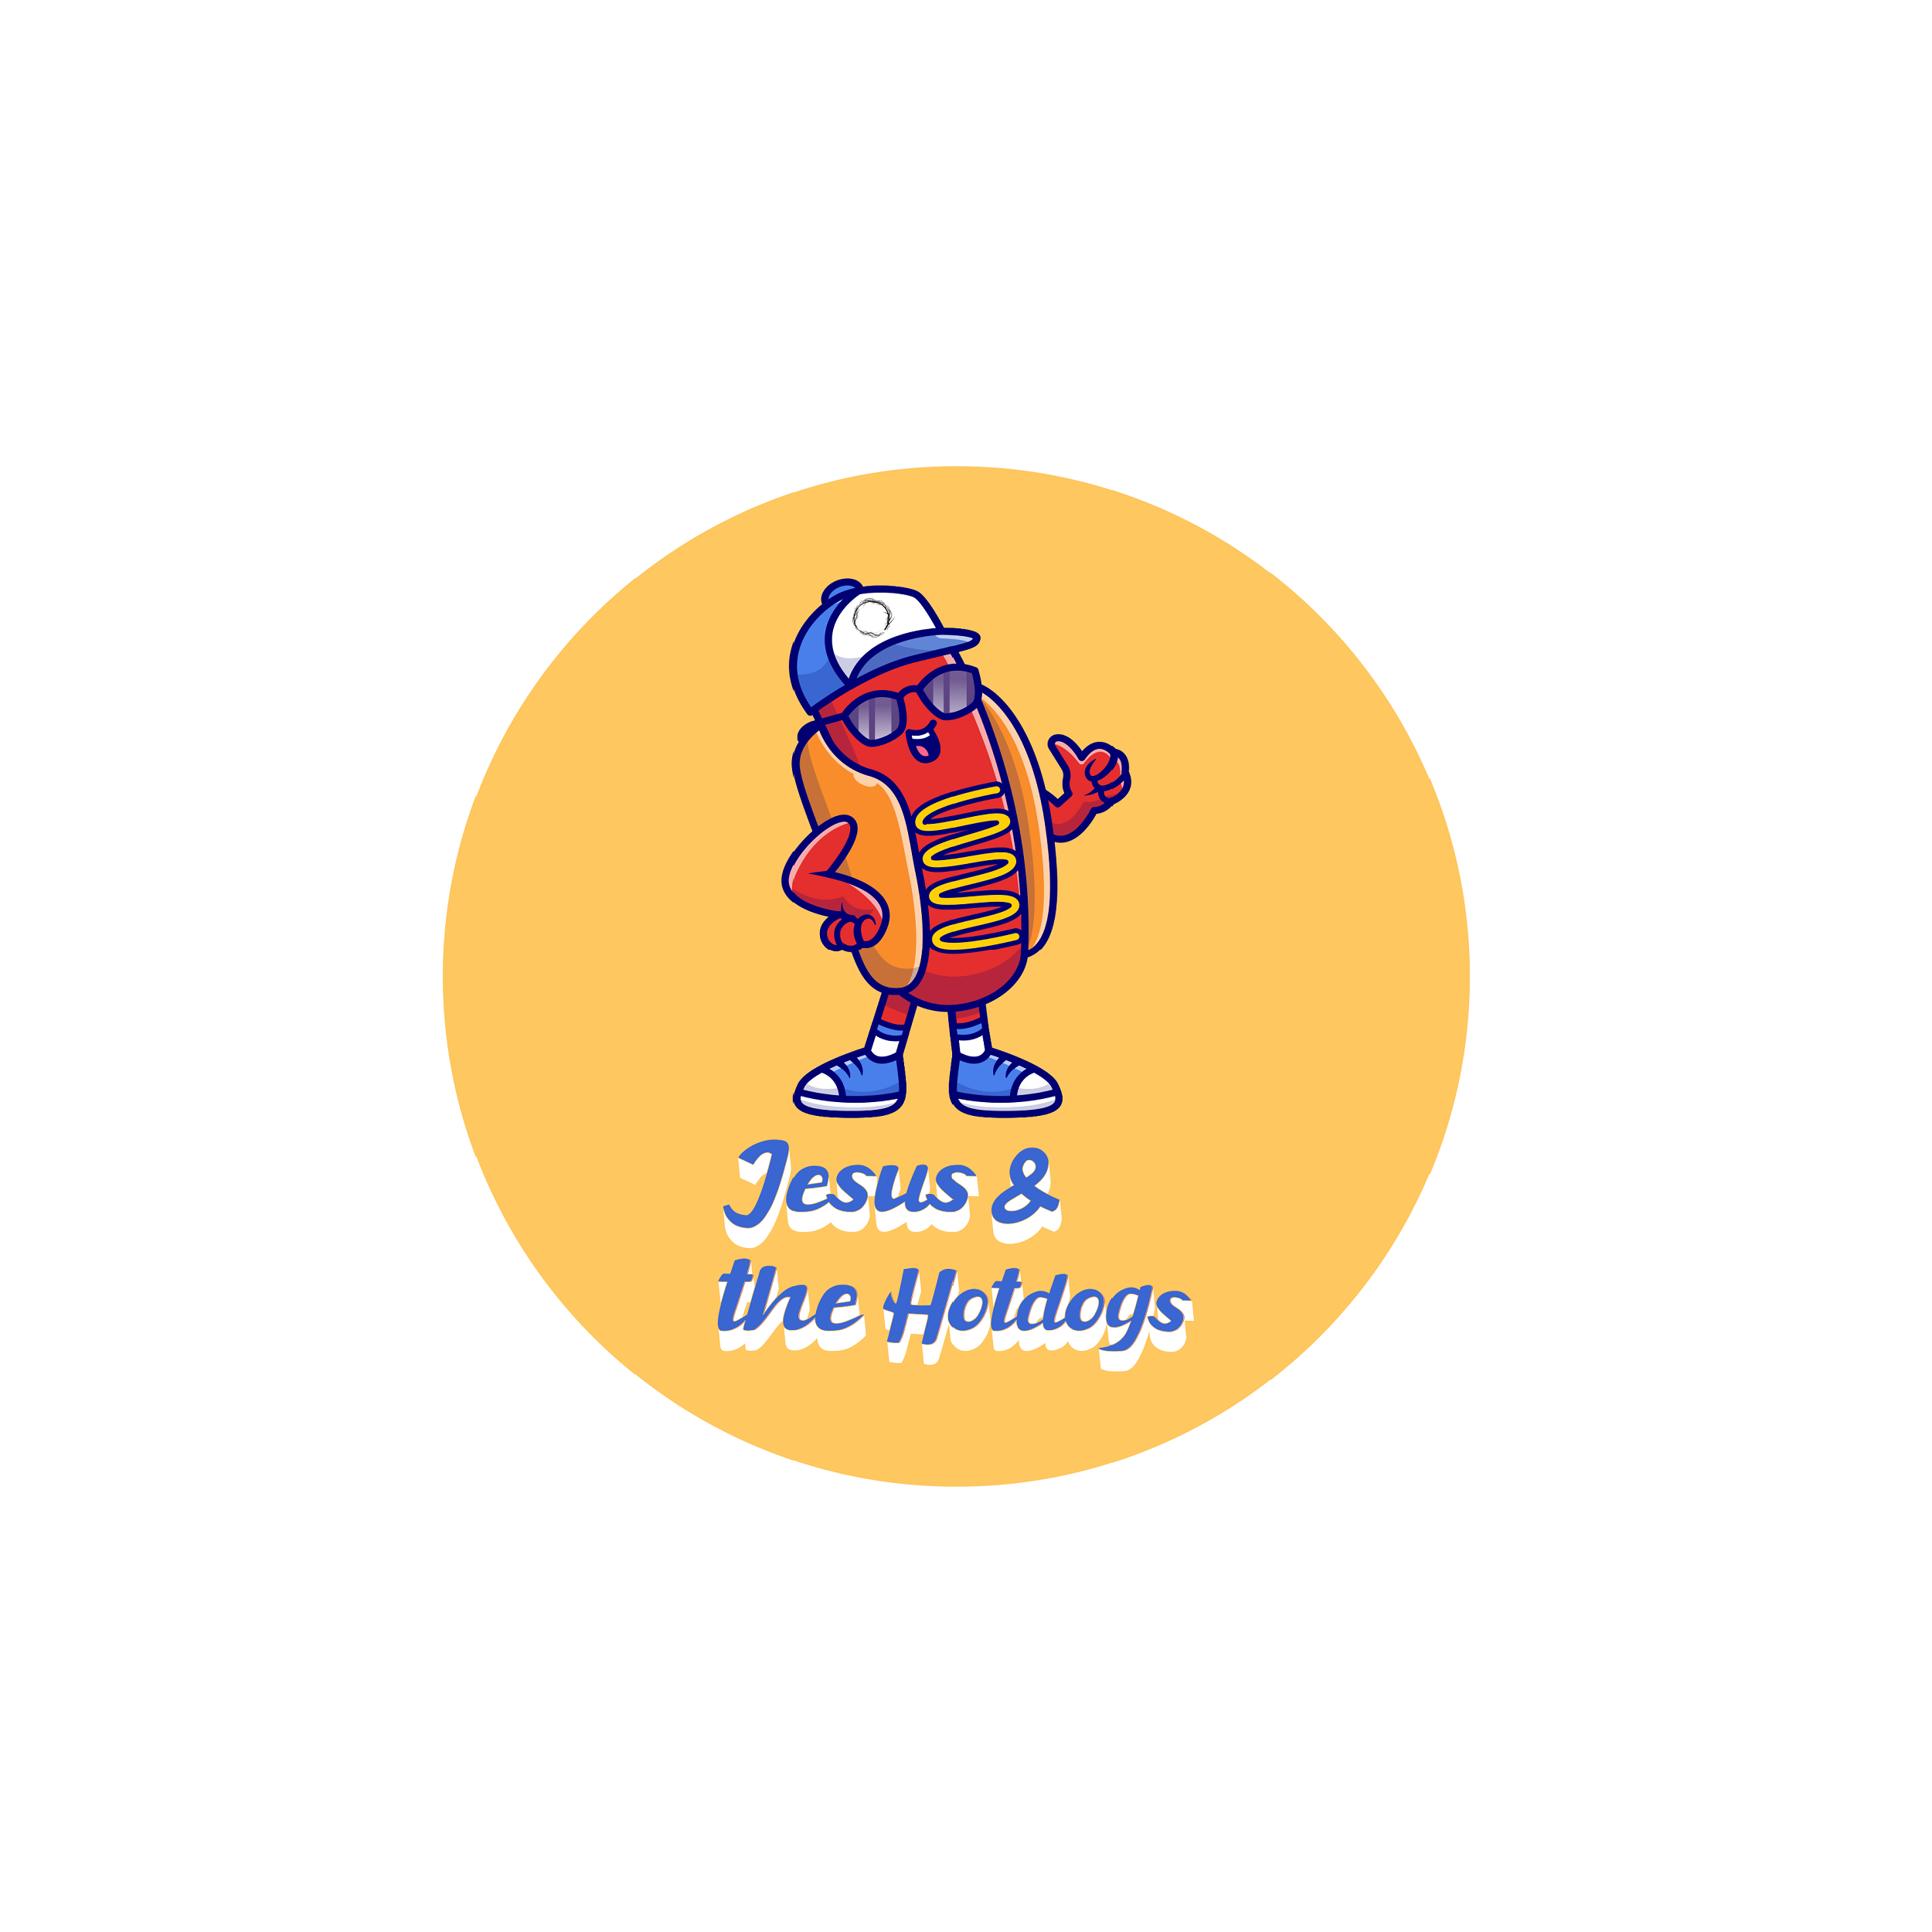 Jesus & the Hotdogs